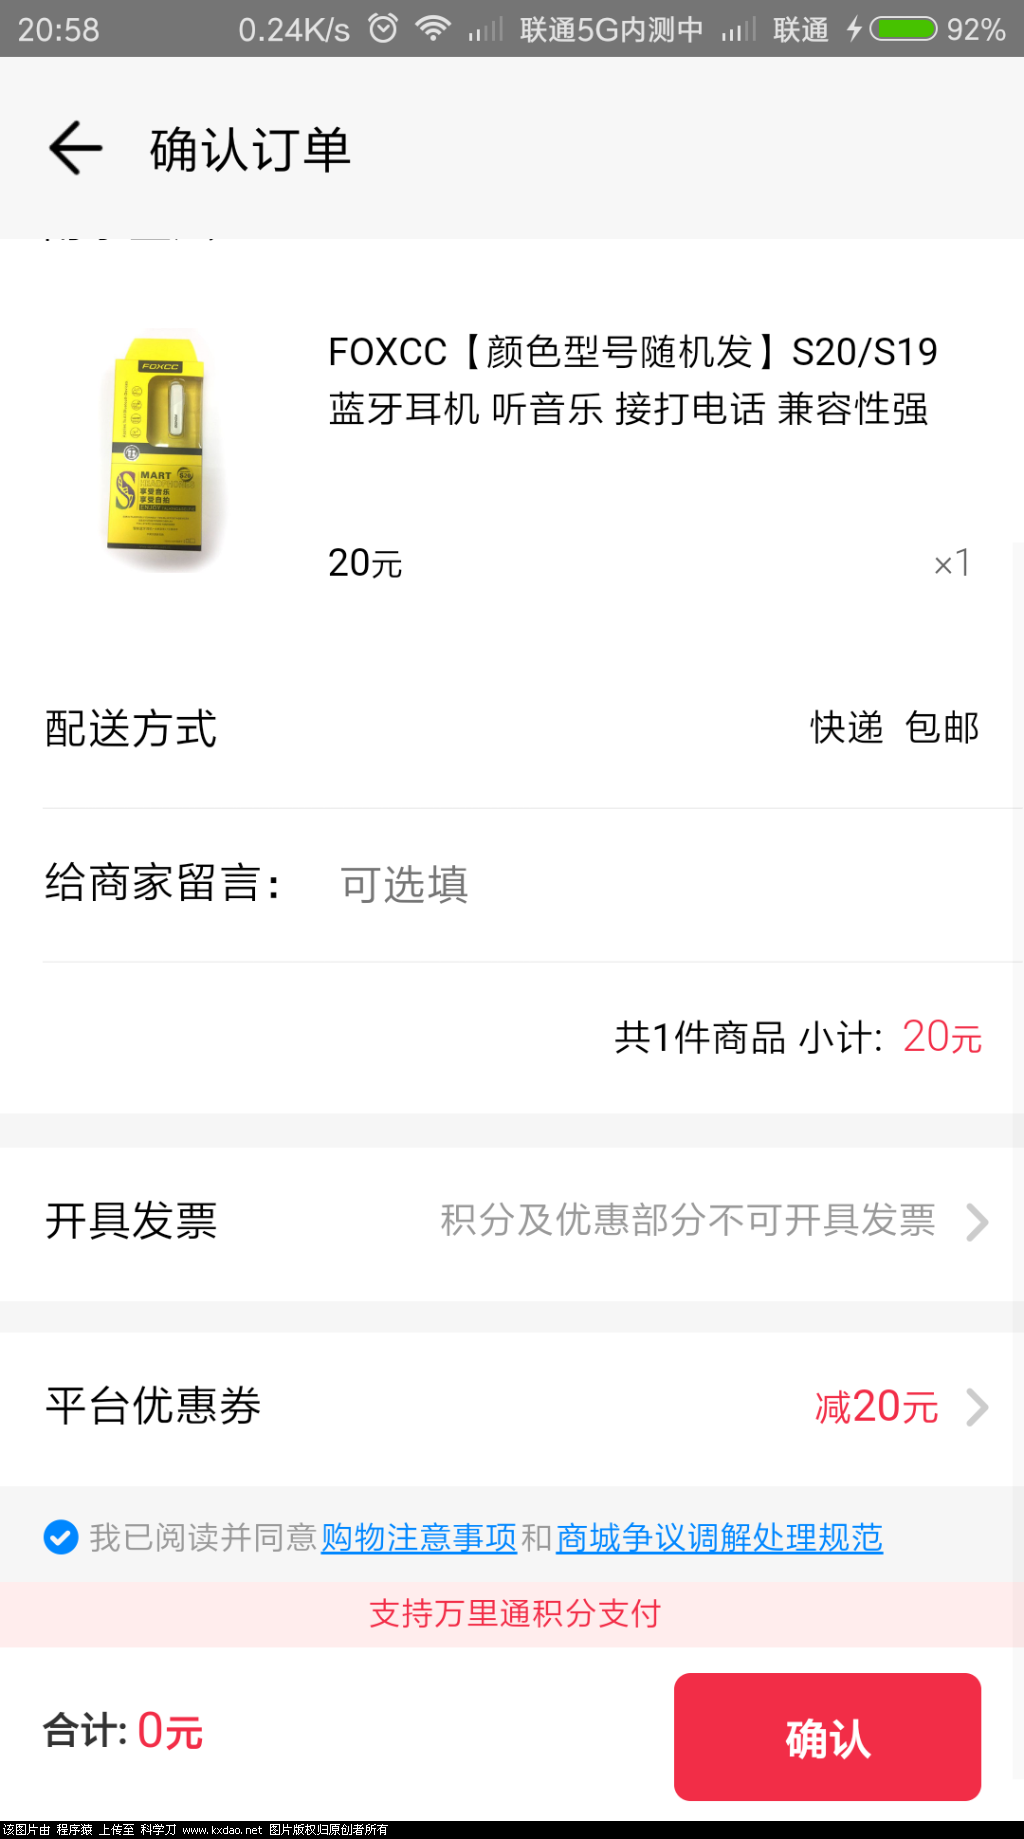 Screenshot_2018-07-24-20-58-51-853_com.paic.zhifu.wallet.activity.png